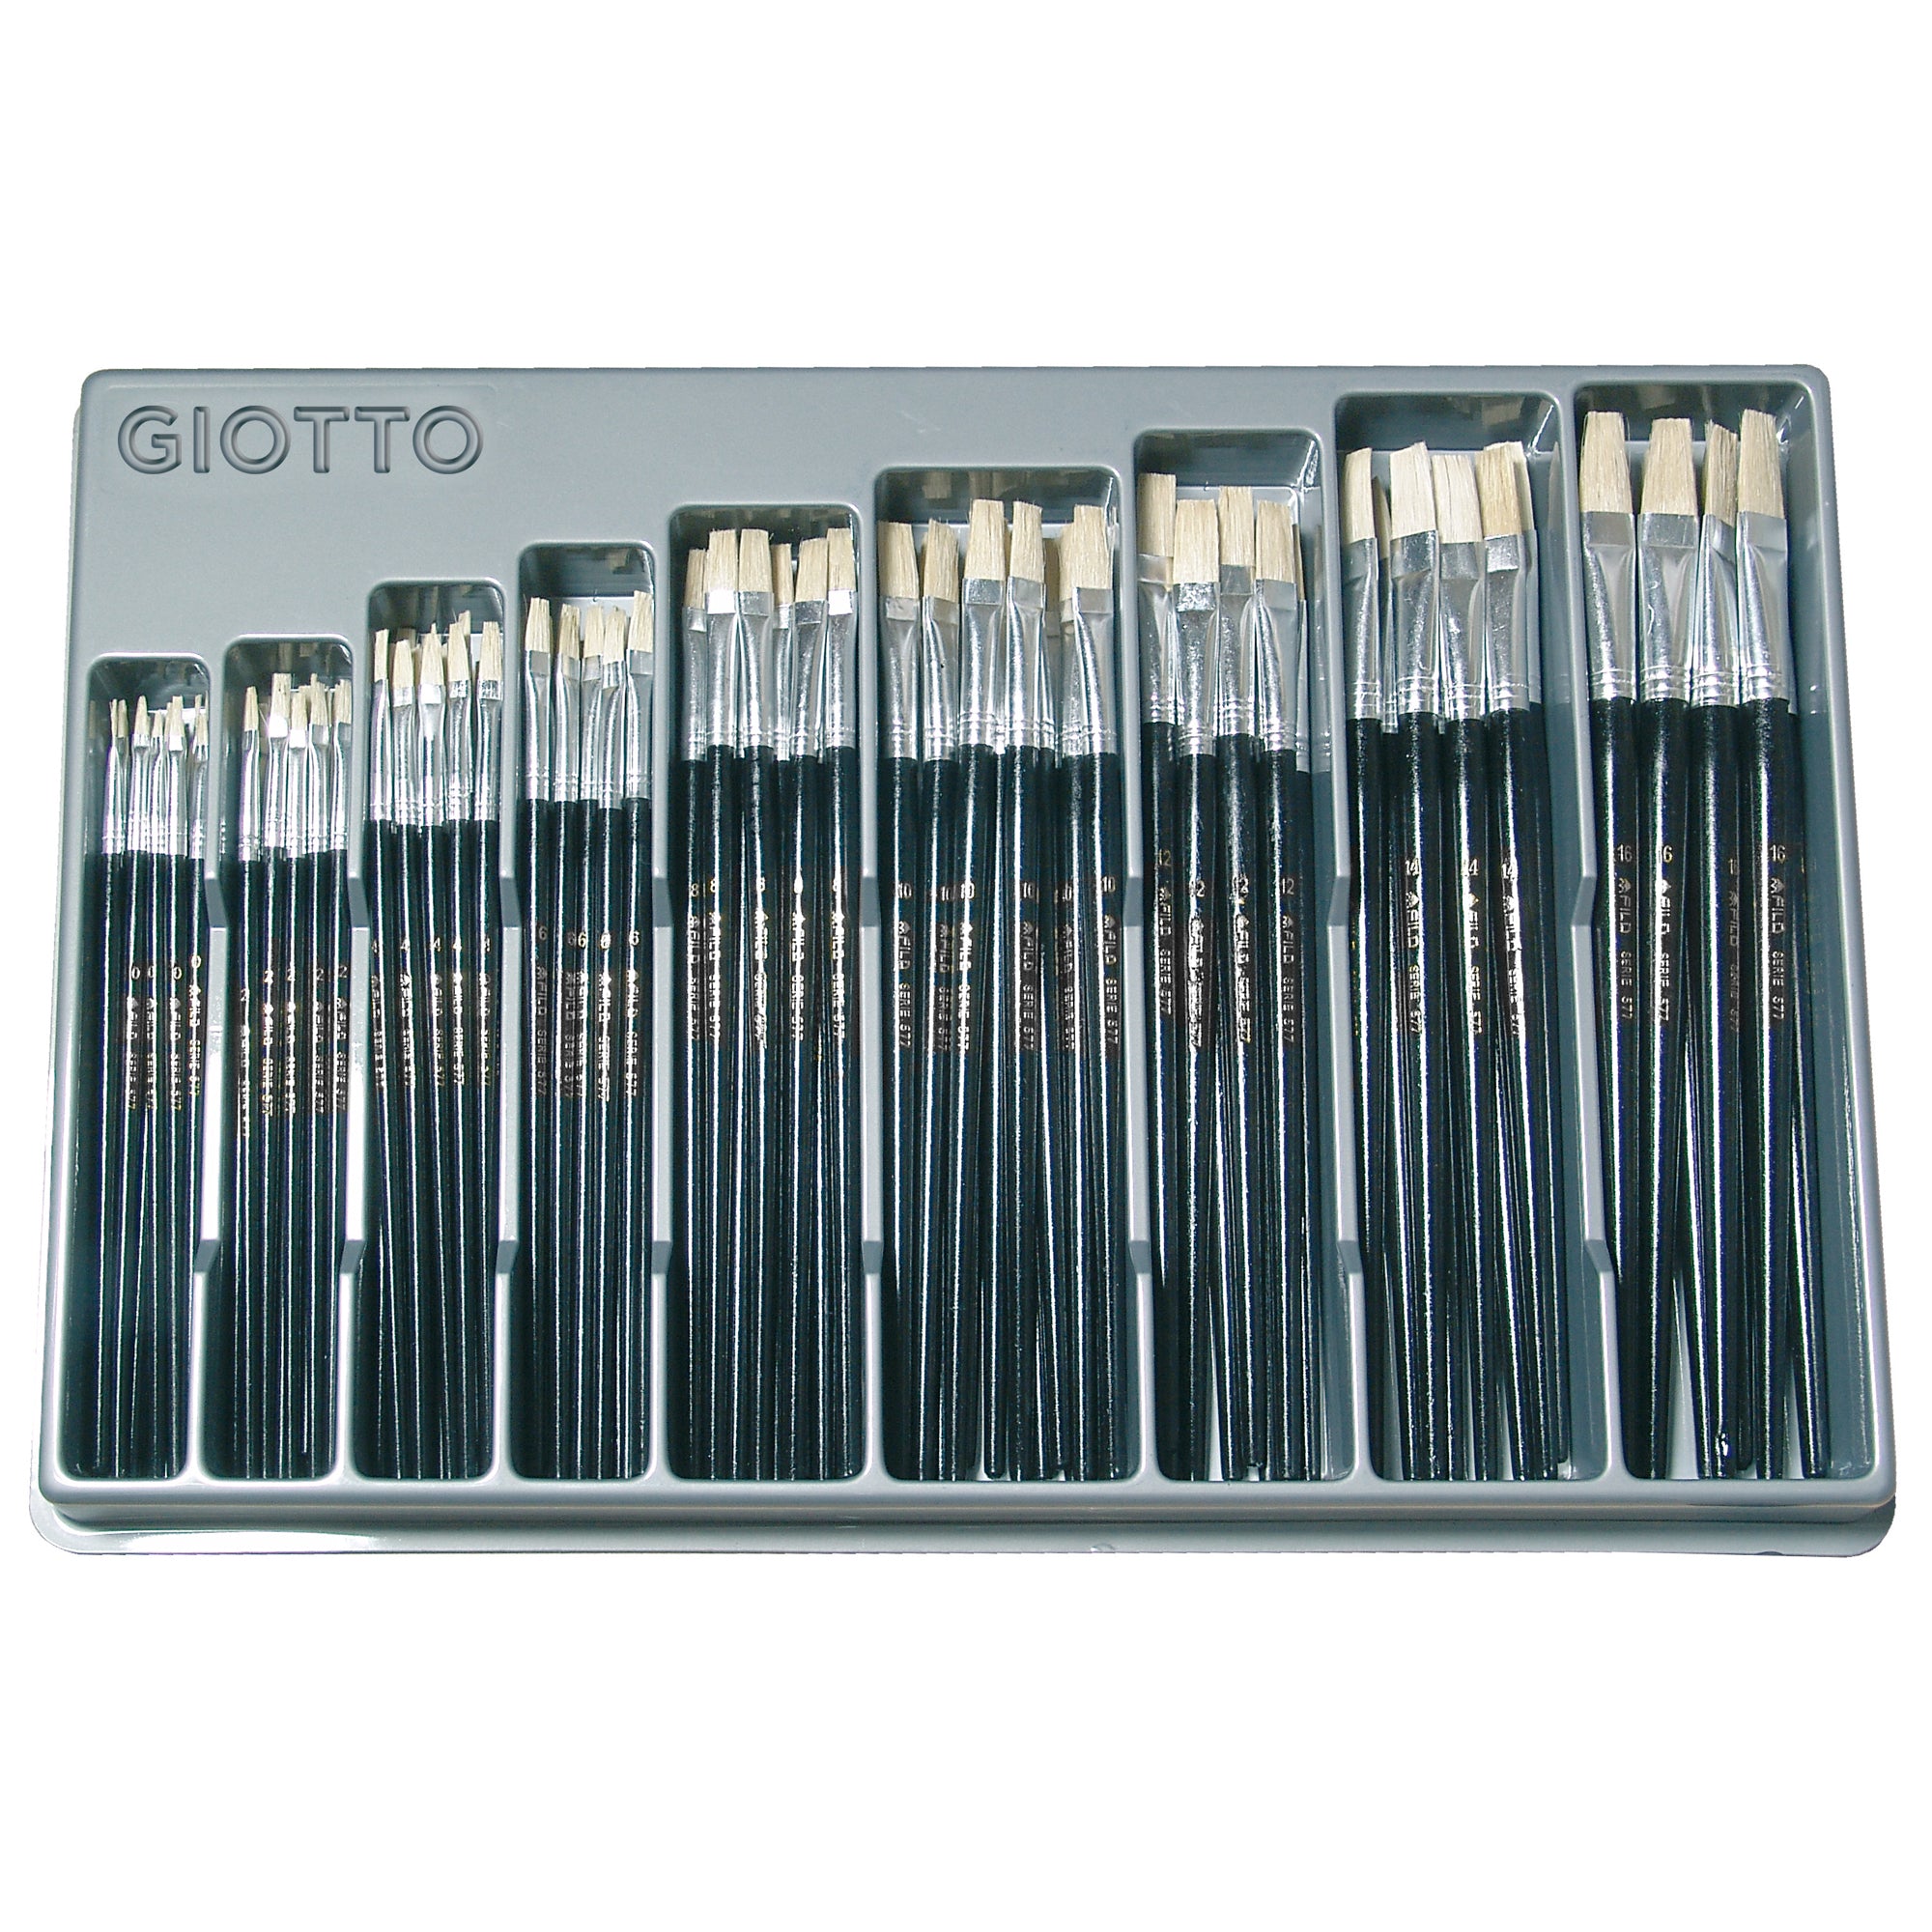 giotto-expo-126-pennelli-piatti-setola-serie-art-577